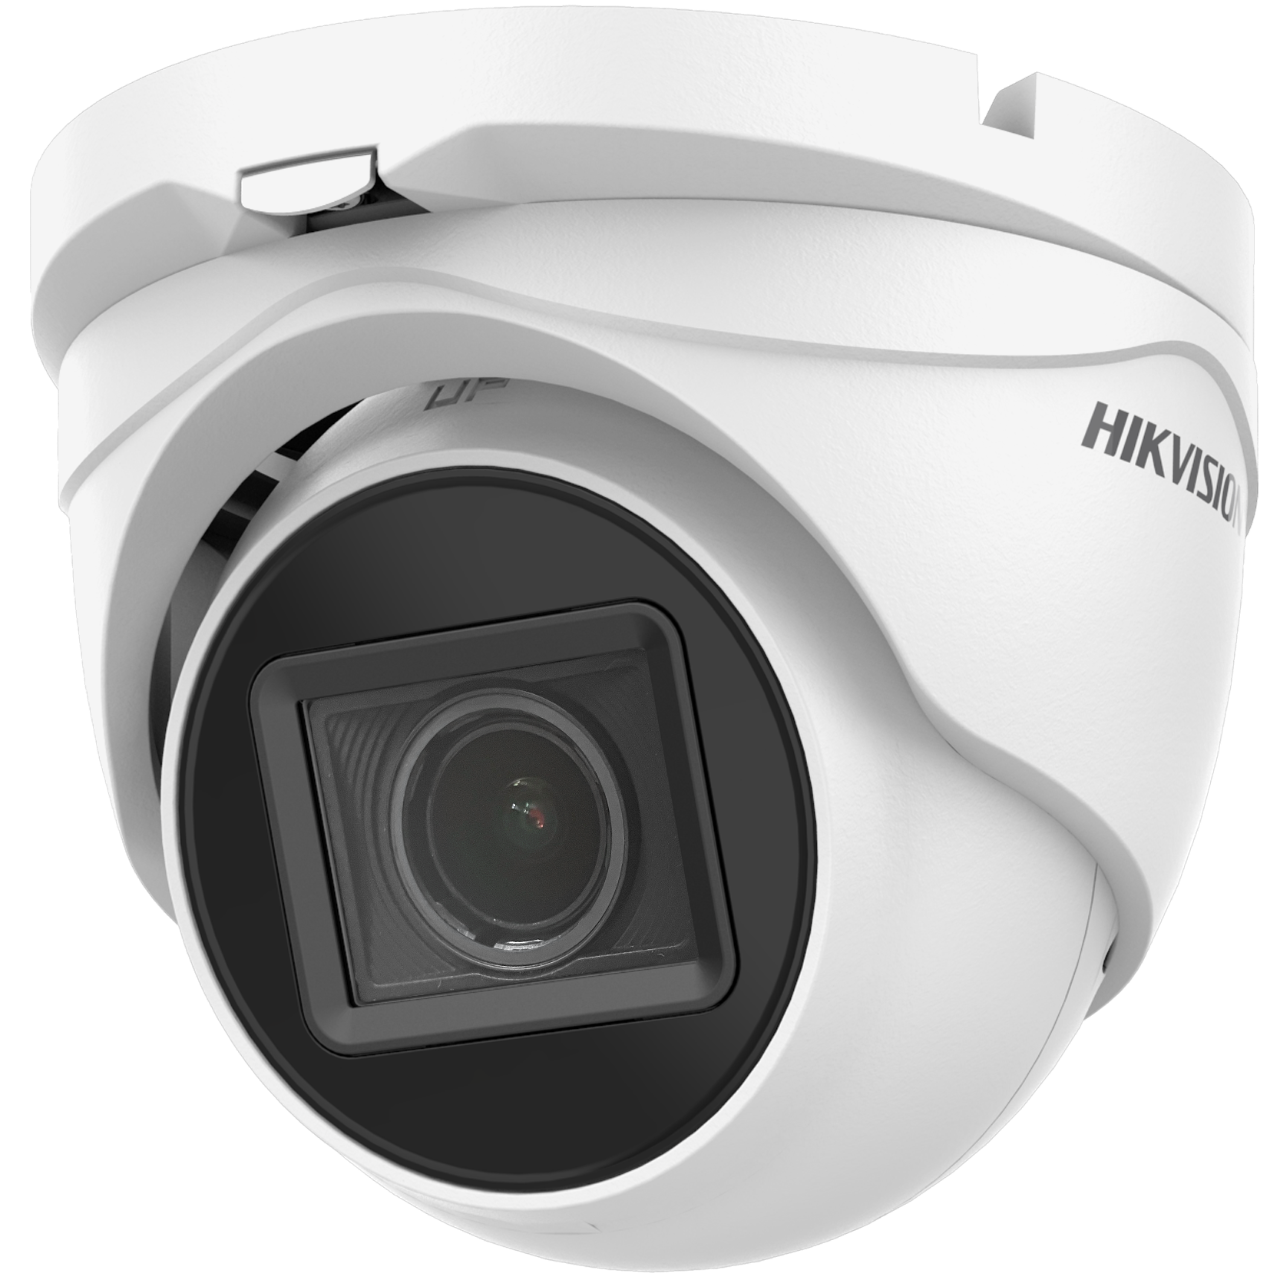 Hikvision DS-2CE79H0T-IT3ZF(2.7-13.5mm)(C) 5MP Varifokal HD TVI Turret Kamera Signal umschaltbar